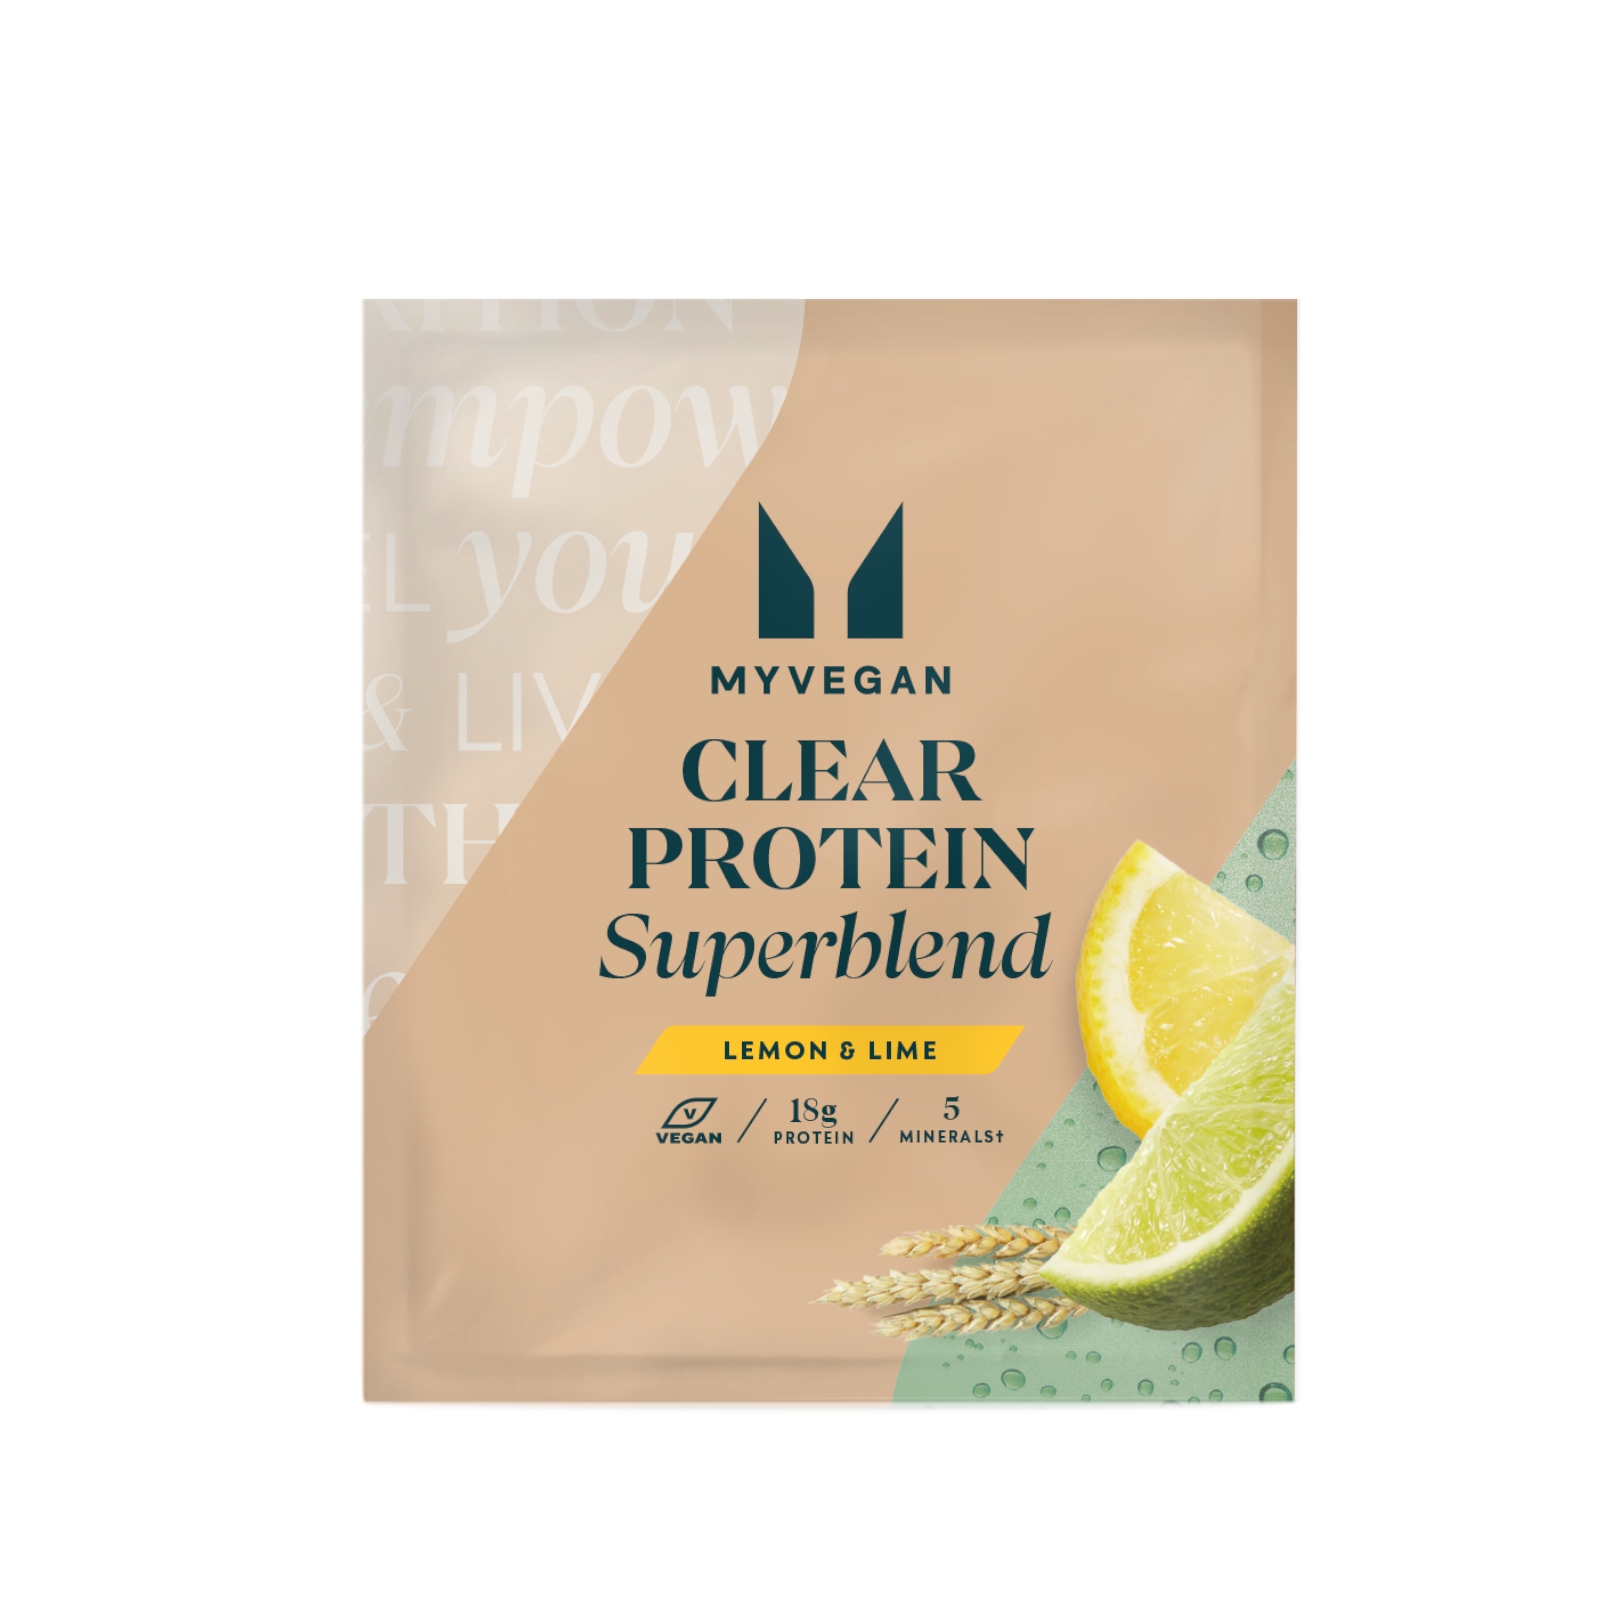 Myvegan UK Myvegan Clear Protein Superblend (Sample) - 1servings - Lemon & Lime